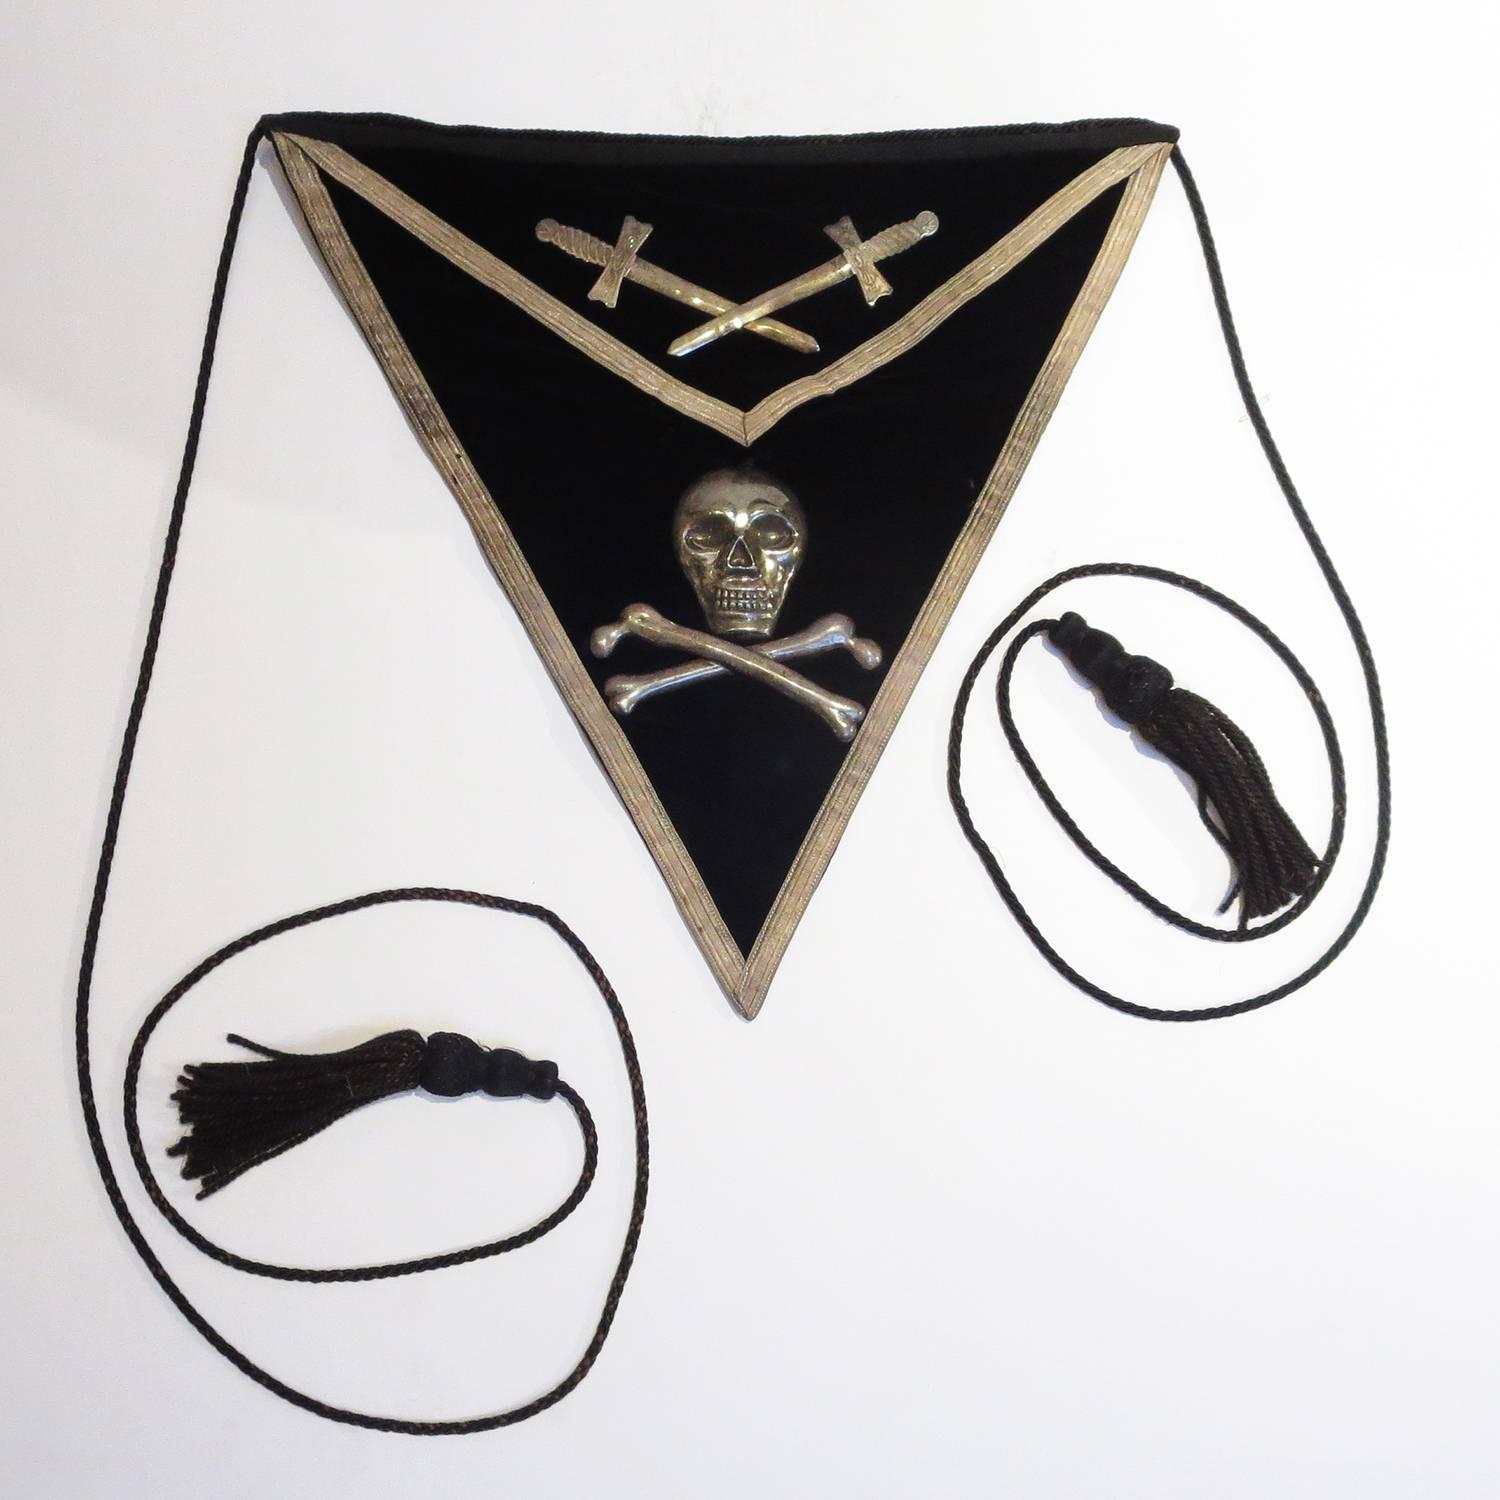 Knight Templar Masonic Velvet Ceremonial Apron with Skull and Crossbones